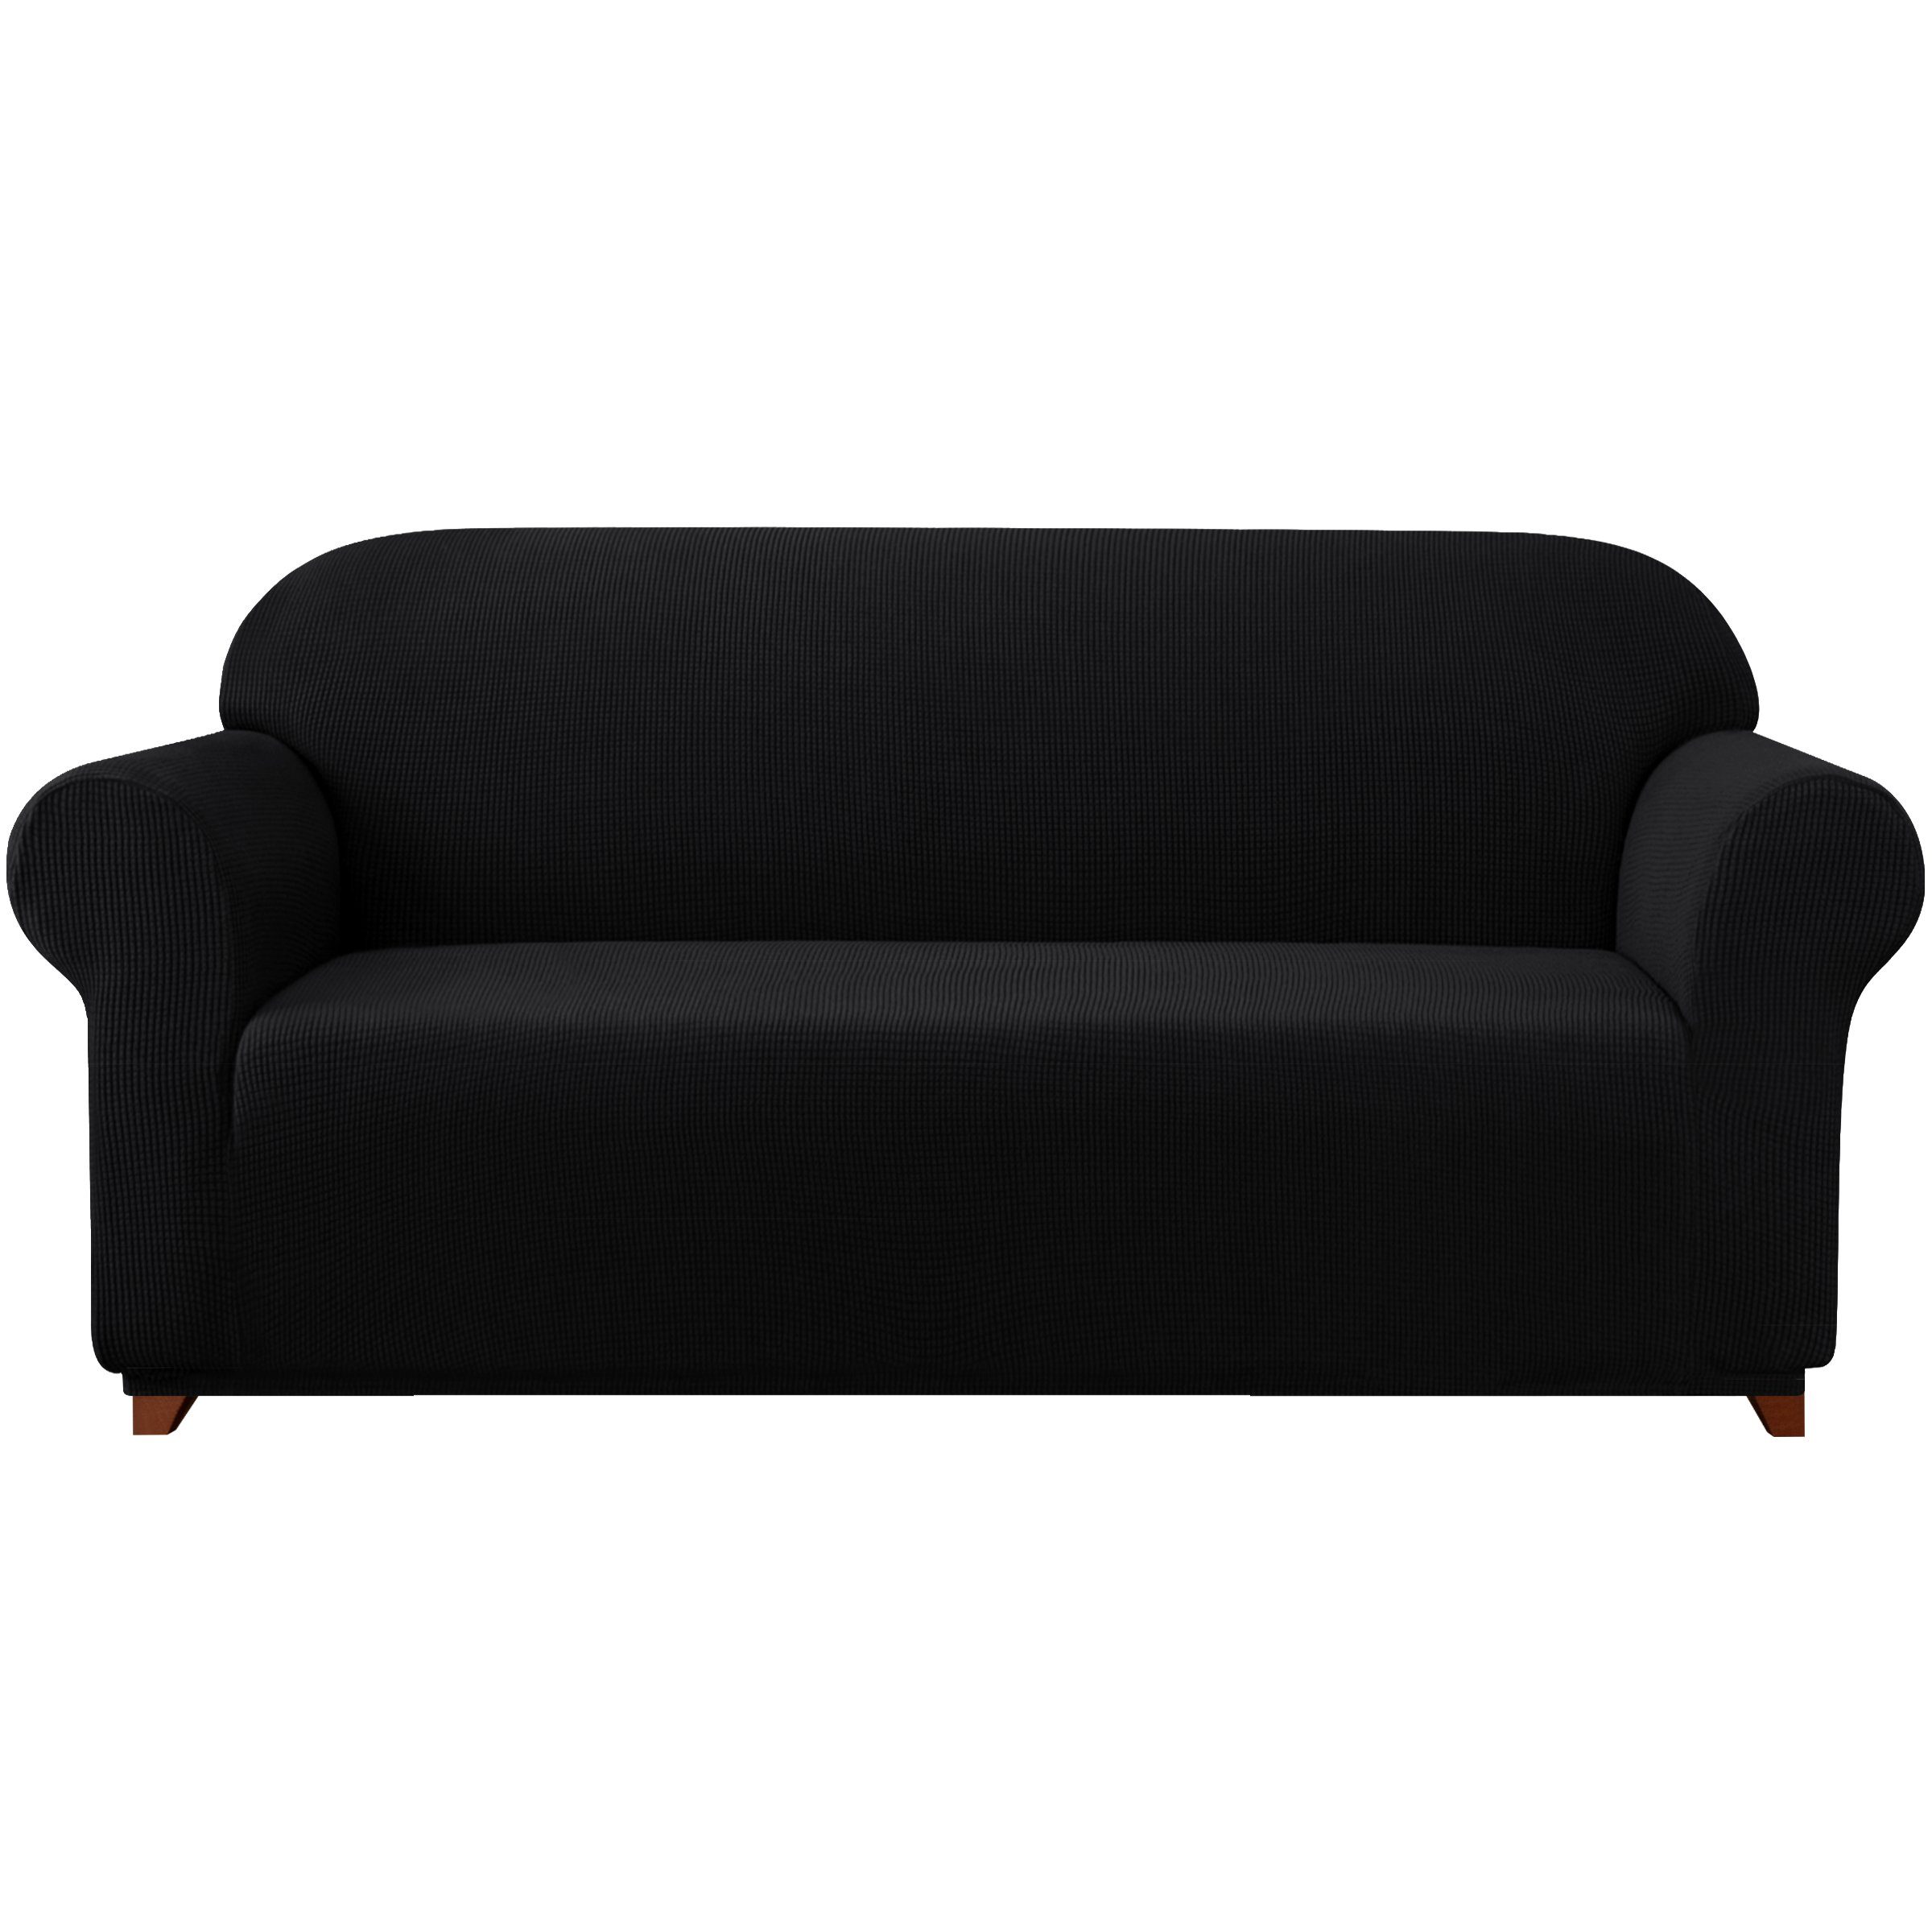 Sofahusse 2/3/4 Sitzer Sofabezug, SUBRTEX, mit dezentem Muster schwarz